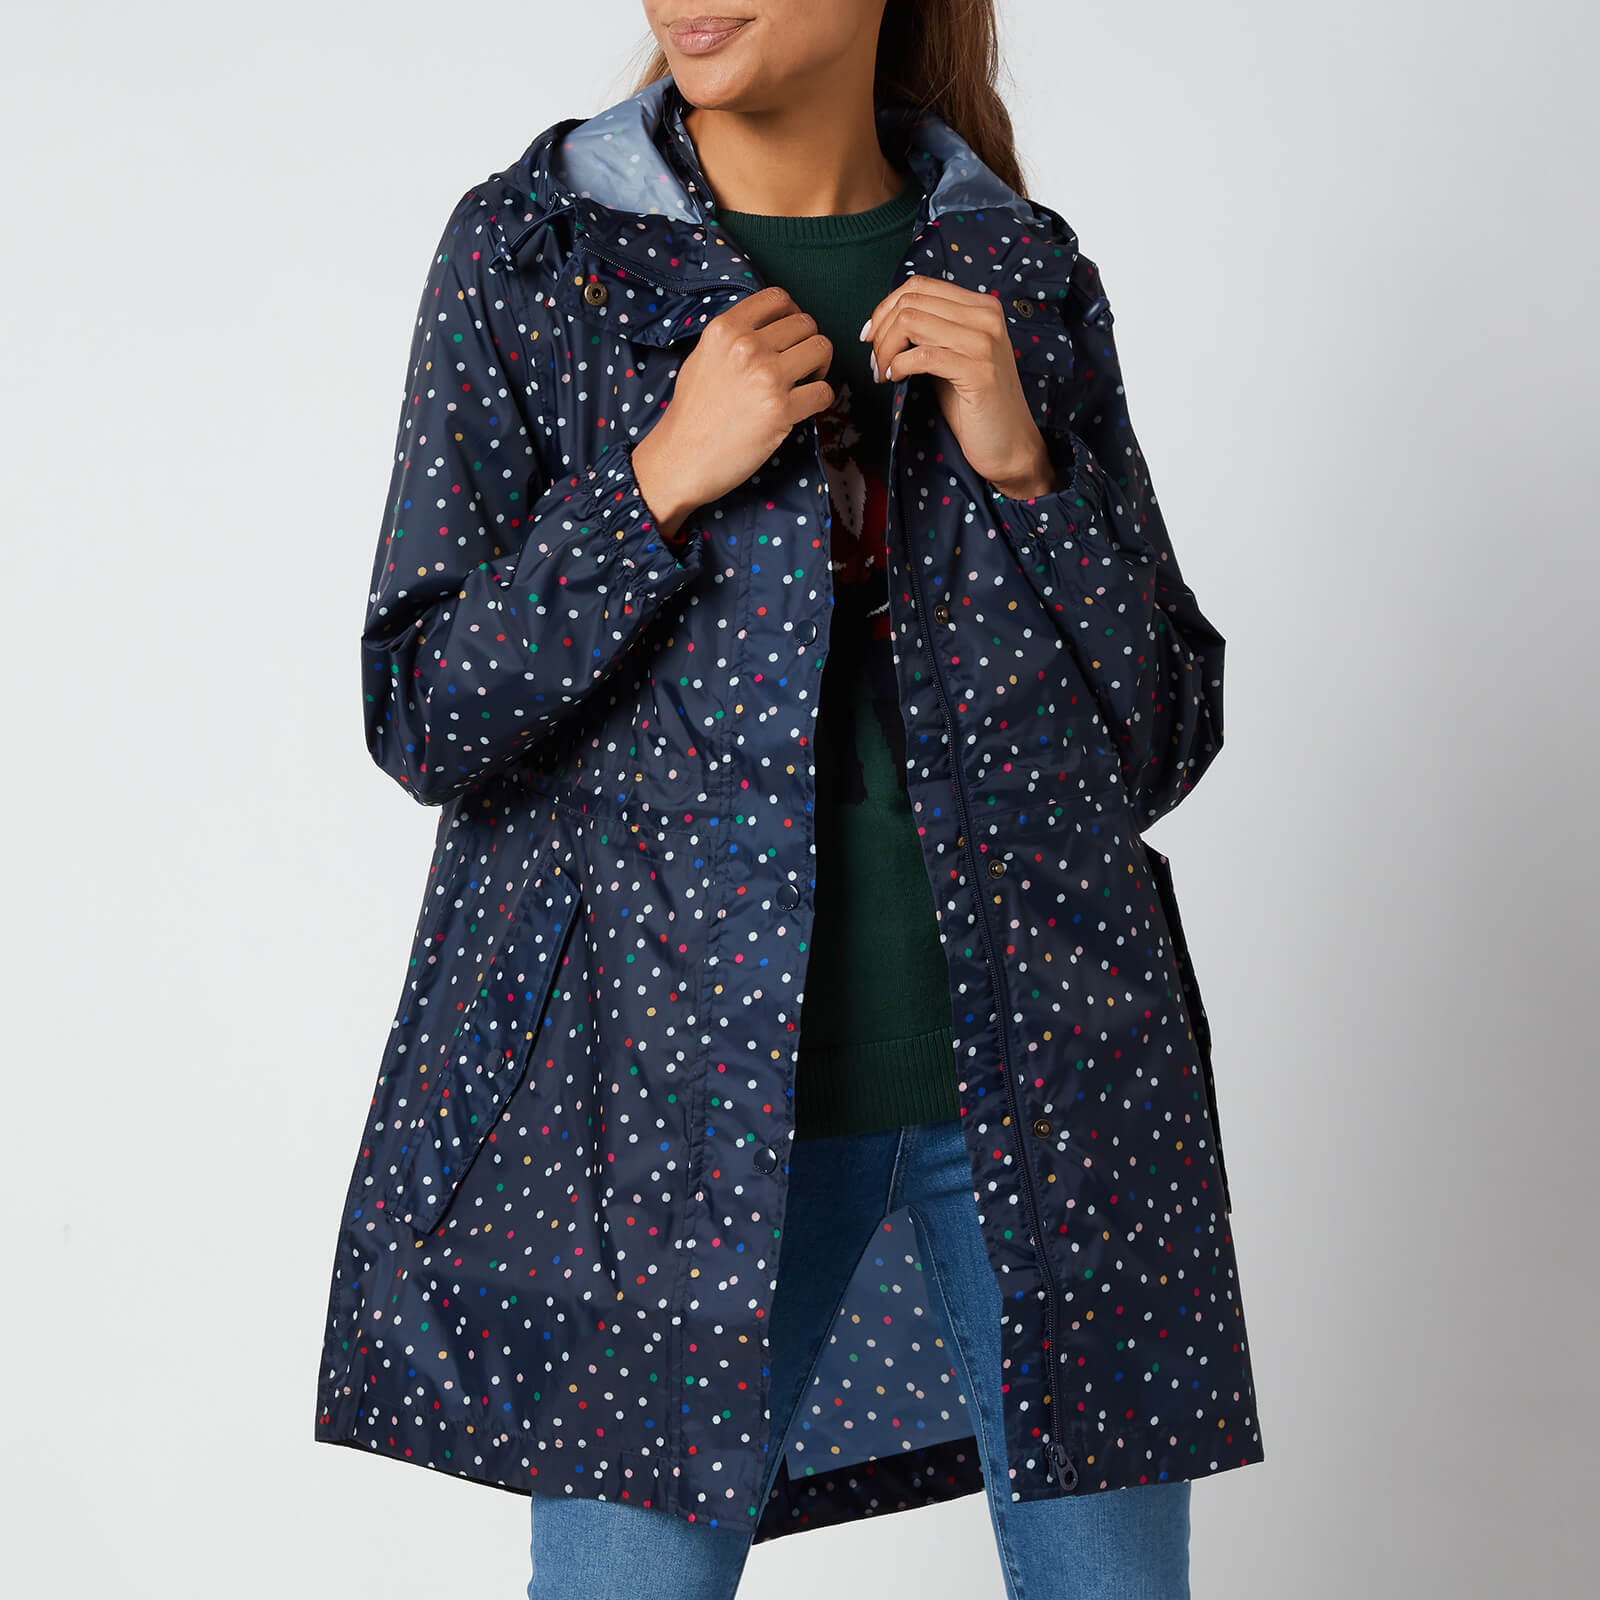 Joules Women's Golightly Packable Jacket - Multi Spot - UK 8